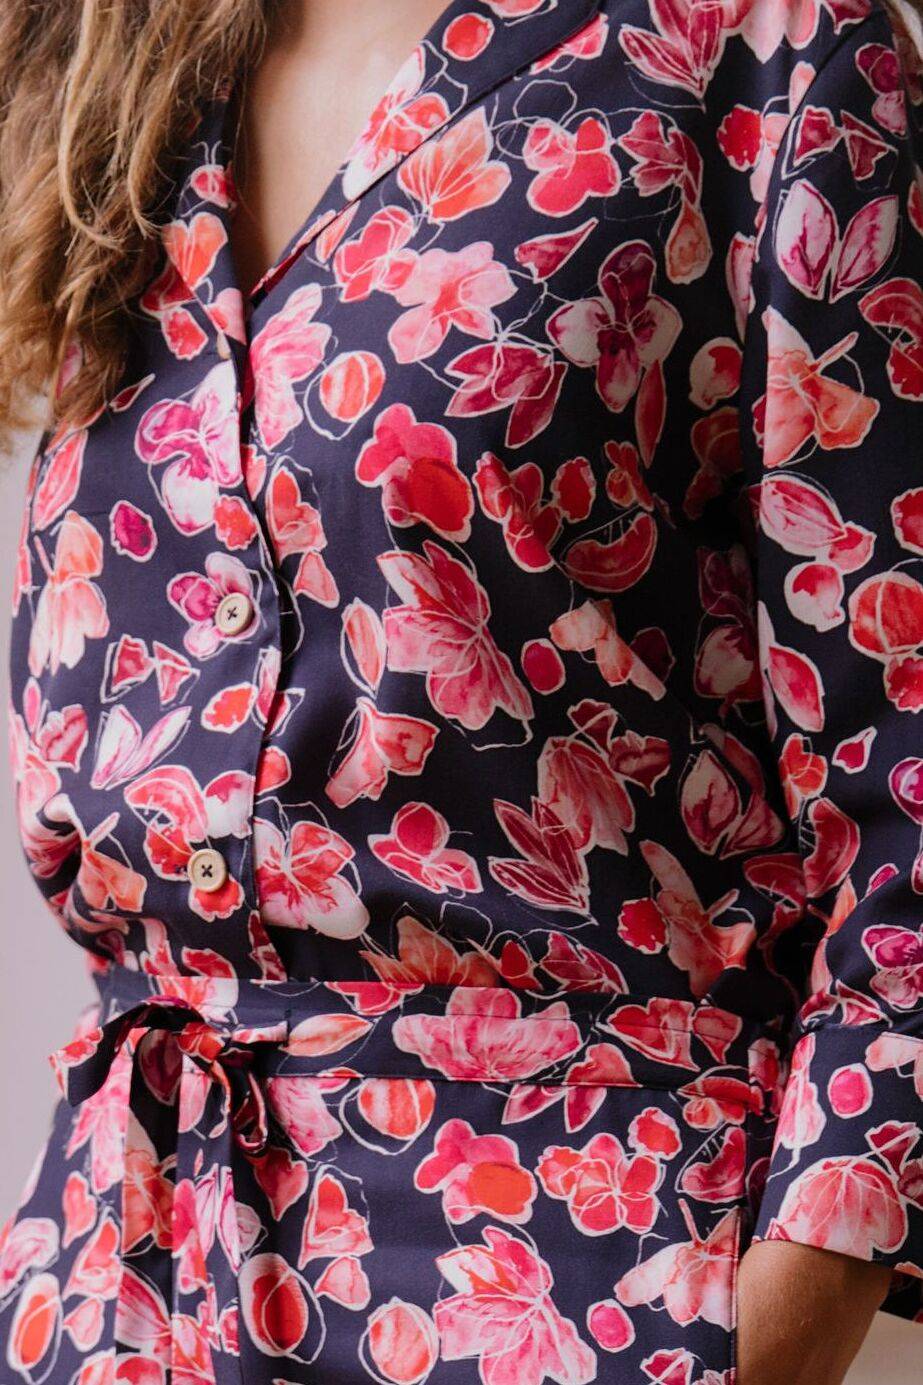 Nêge Paris - Pyjama Encore un Soir chemise pantalon avec un fond bleu nuit orné de détails floraux et fruités dans des coloris roses et rouges